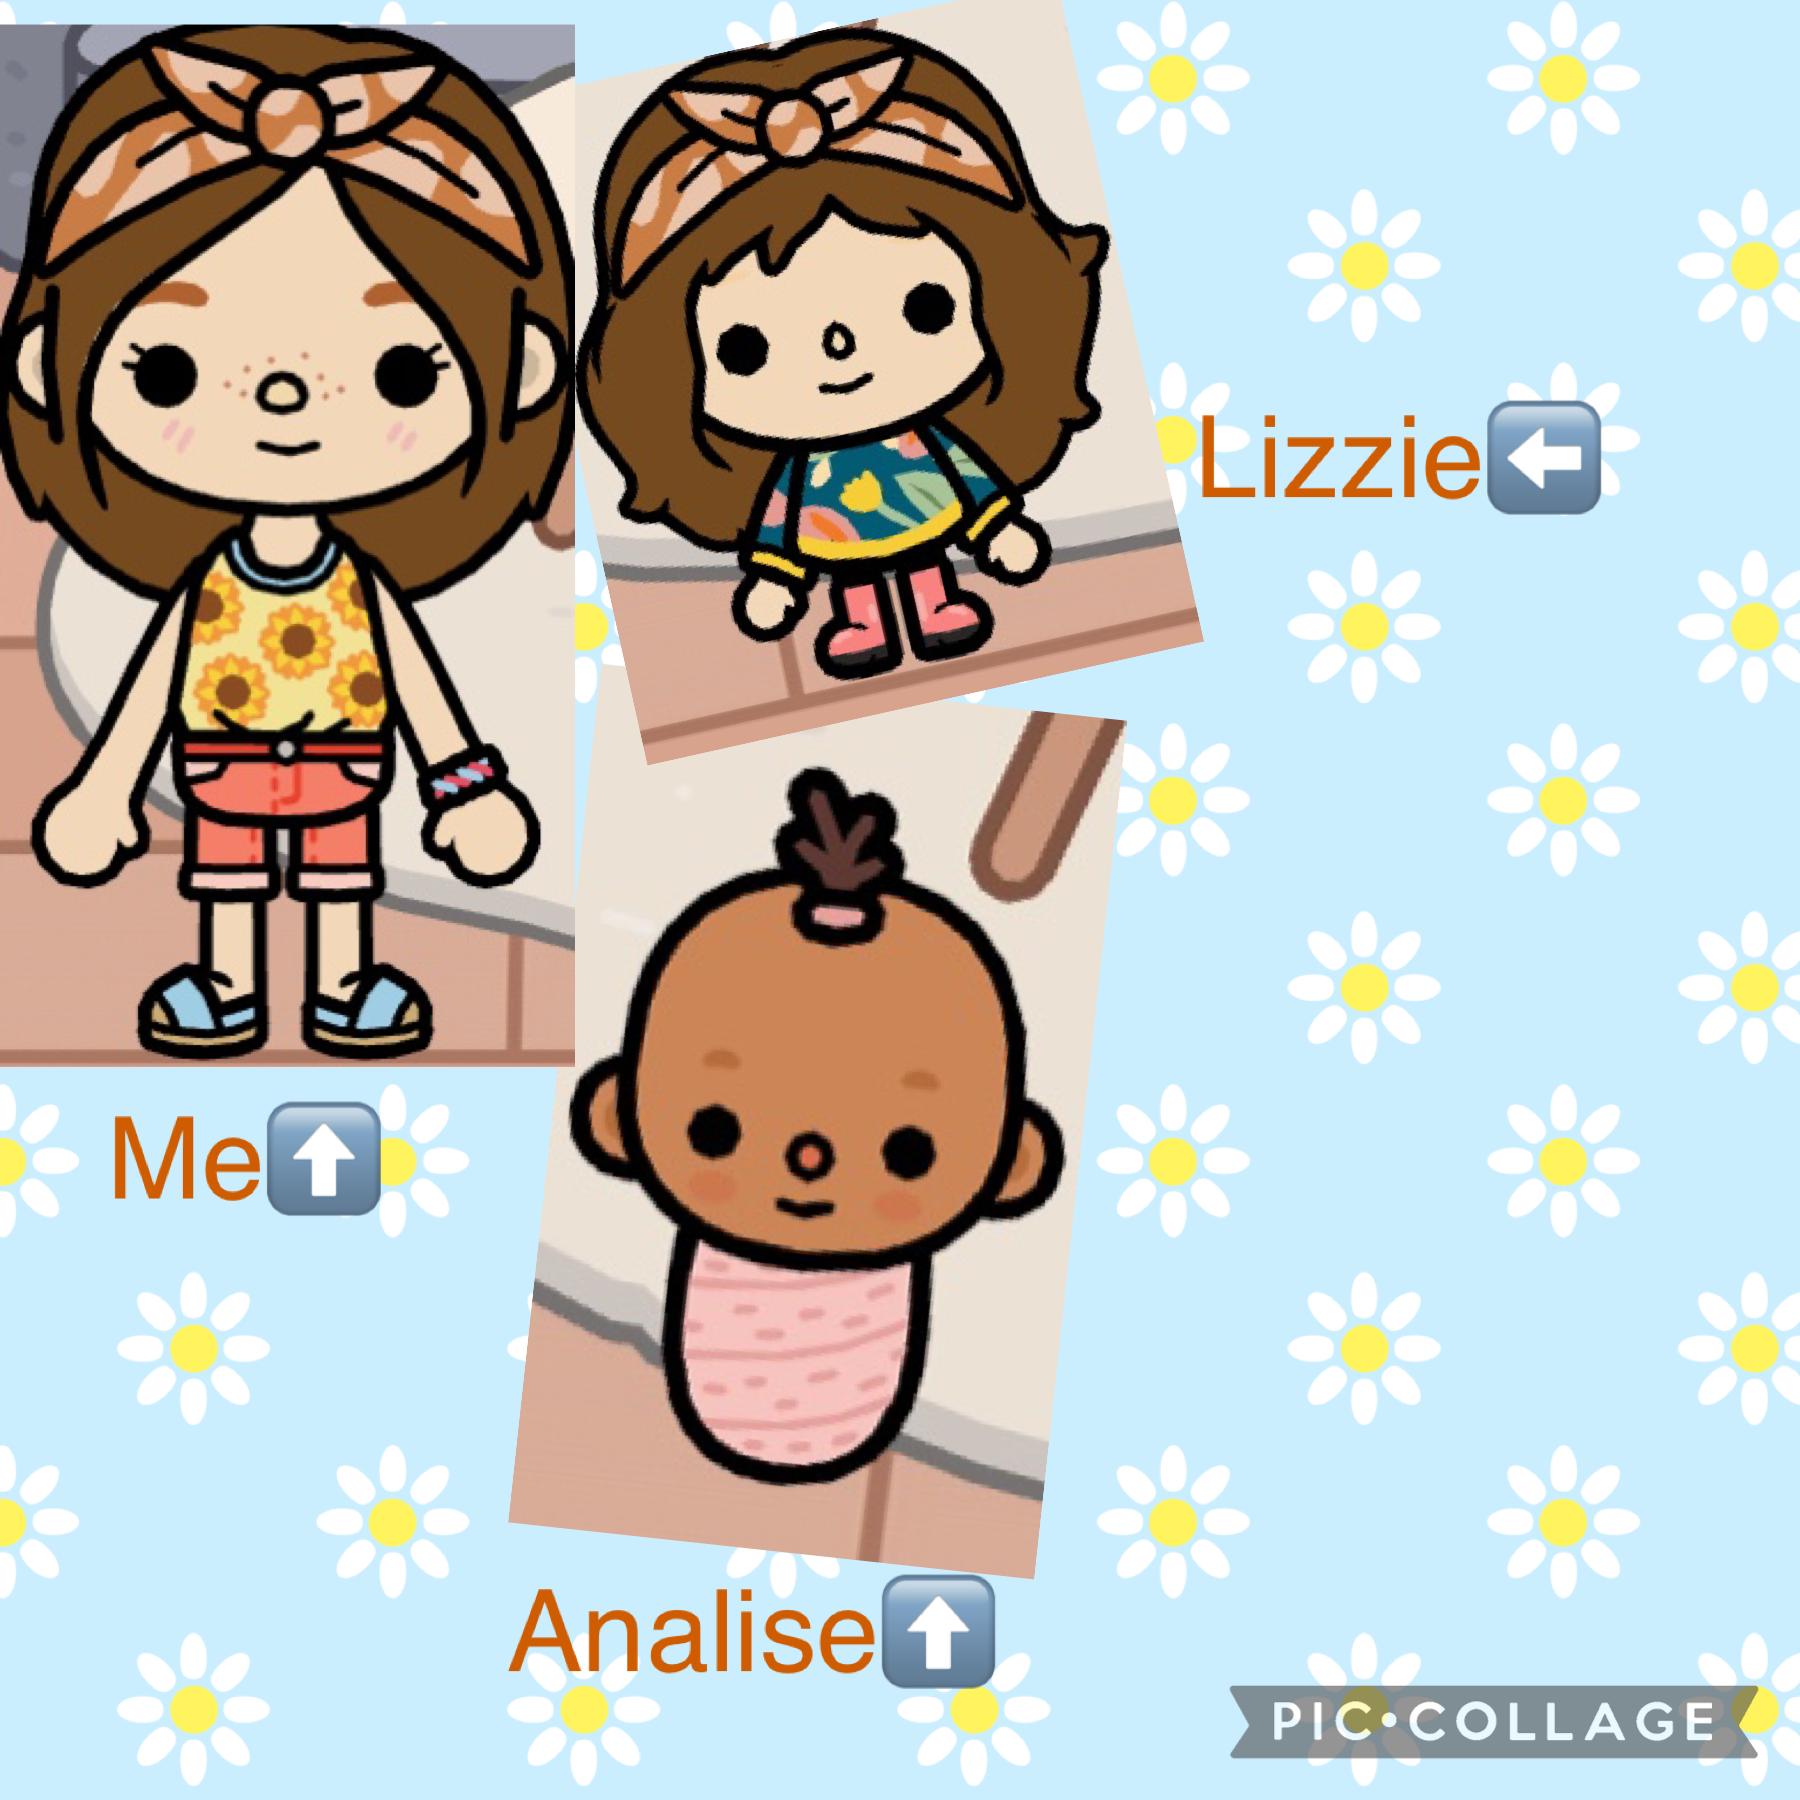 My Toca Boca characters